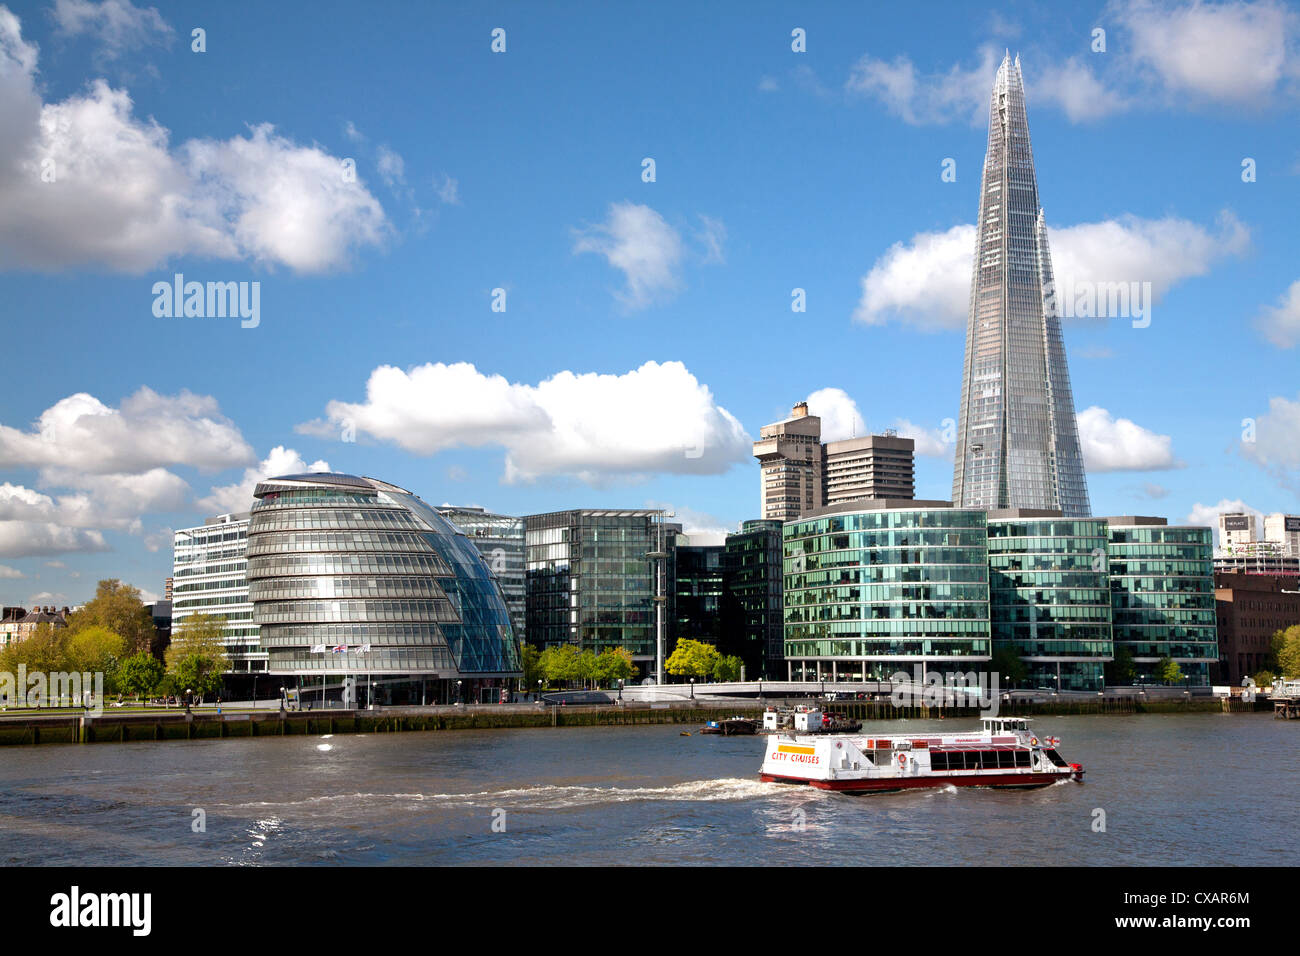 Vue sur le fragment, l'Hôtel de ville et plus London le long de la Tamise, Londres, Angleterre, Royaume-Uni, Europe Banque D'Images